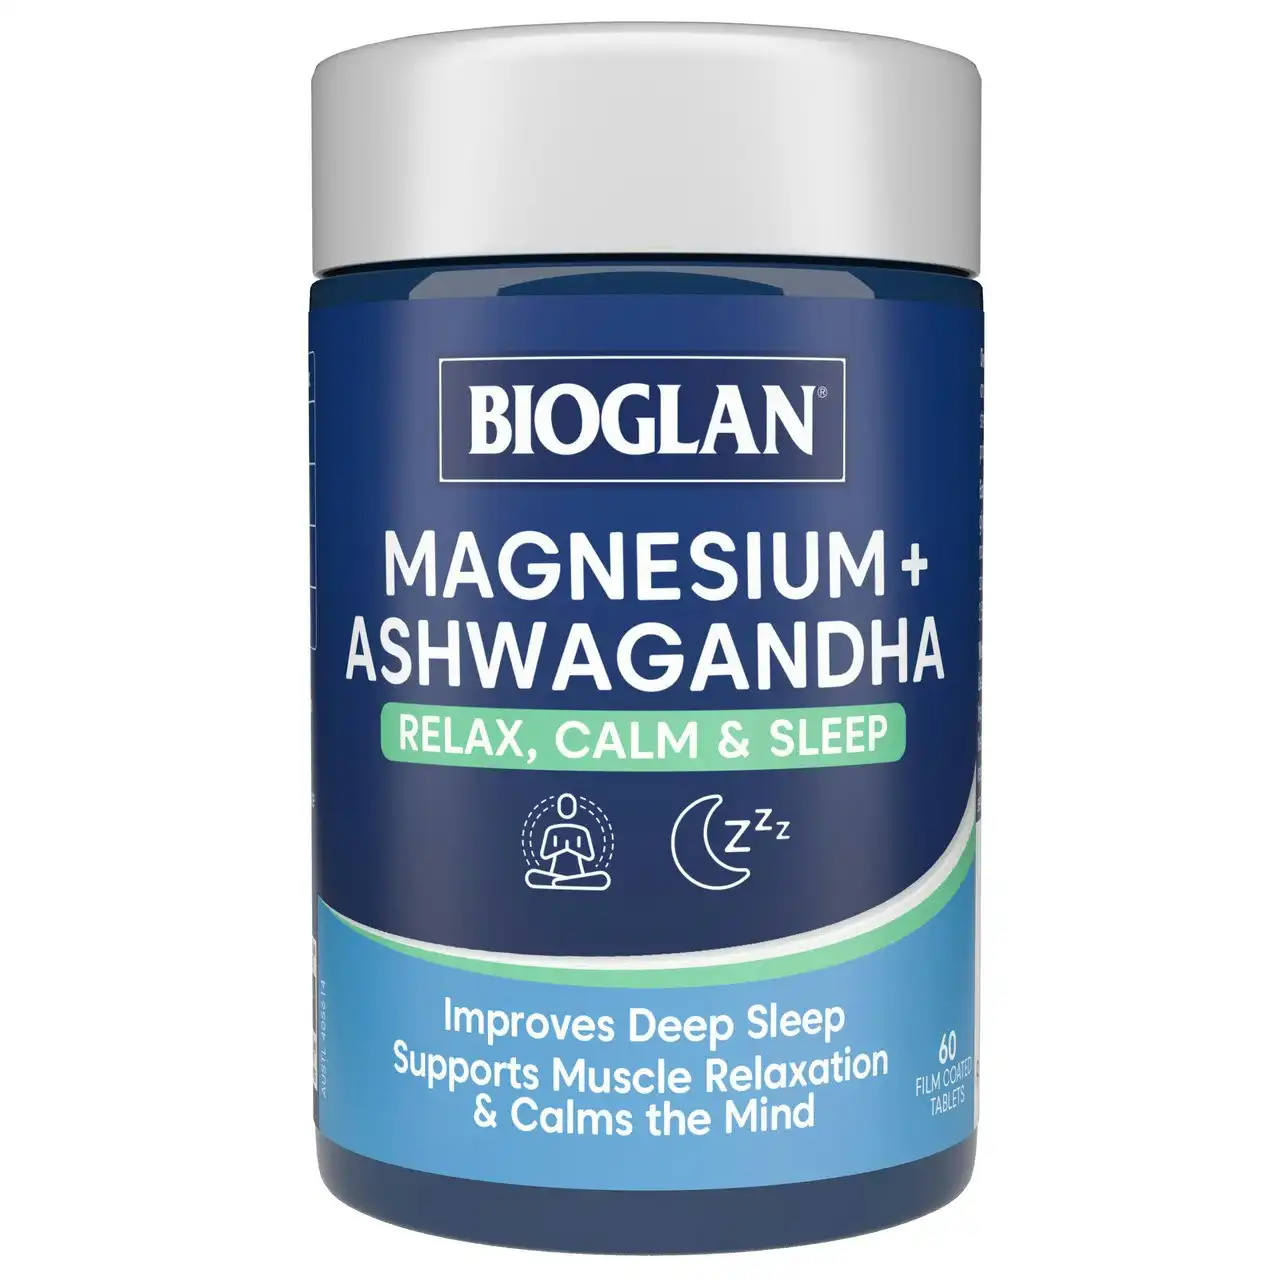 Bioglan Magnesium + Ashwagandha 60s